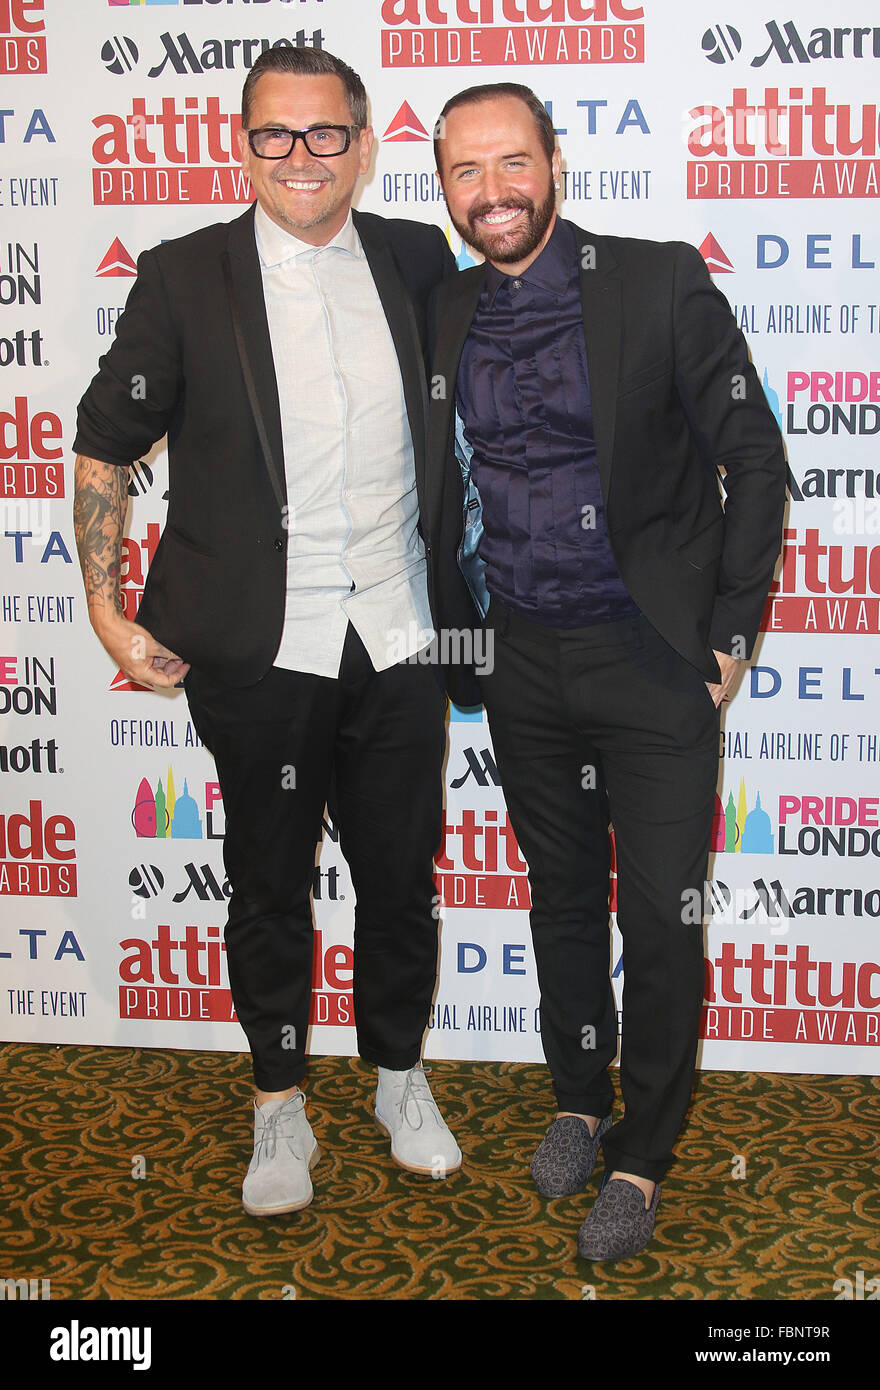 Jun 26, 2015 - Londra, Inghilterra, Regno Unito - Chris destriero e Stephen Webb da Gogglebox frequentando atteggiamento inaugurale orgoglio Awards, hono Foto Stock